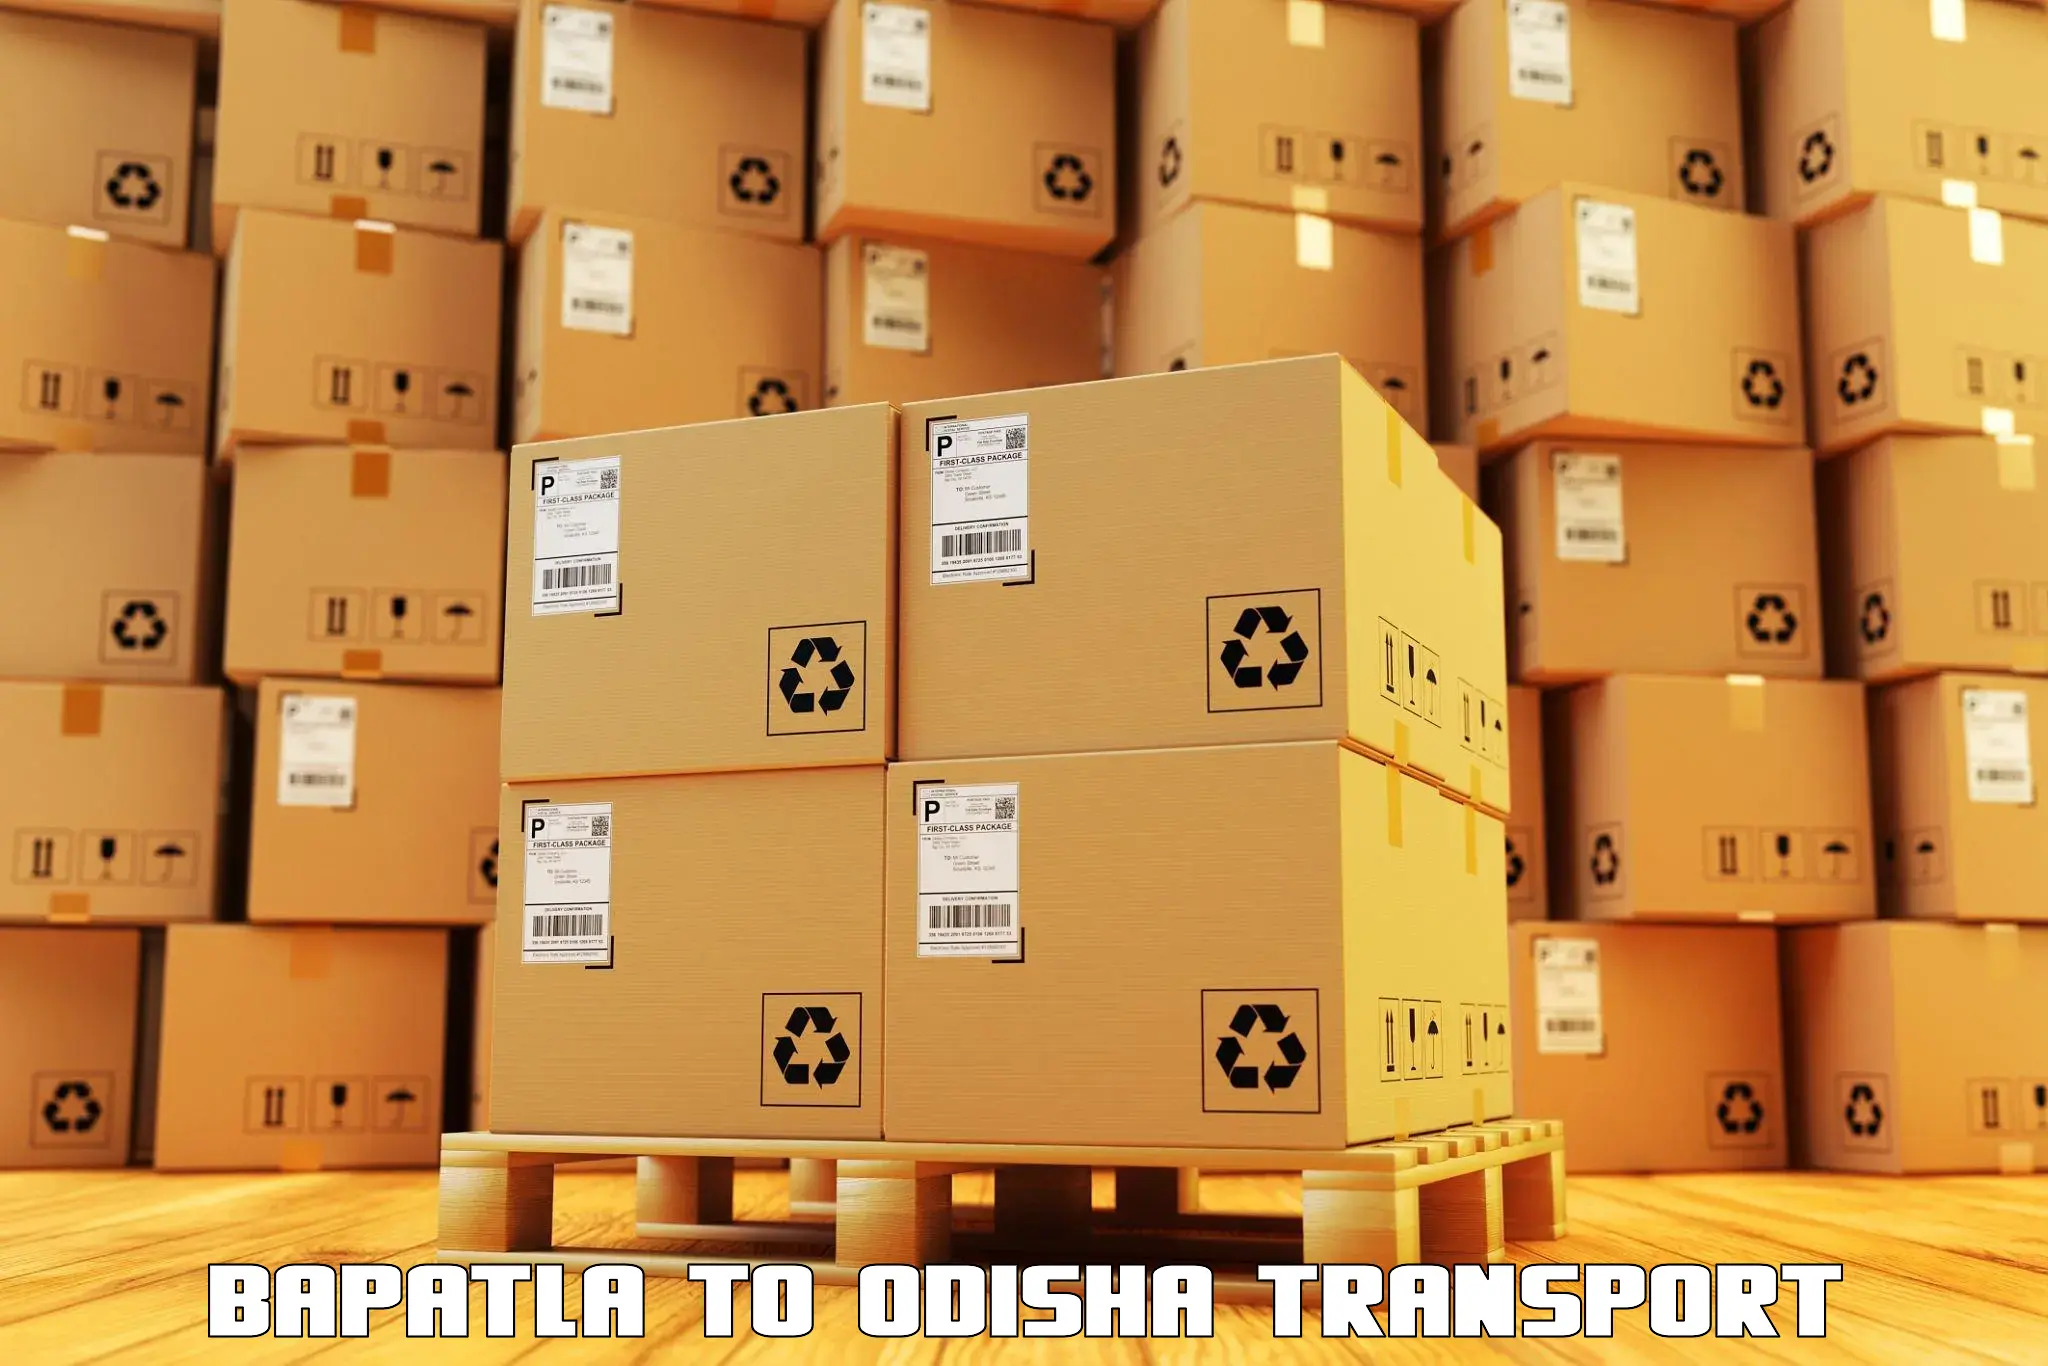 Transport shared services Bapatla to Delang